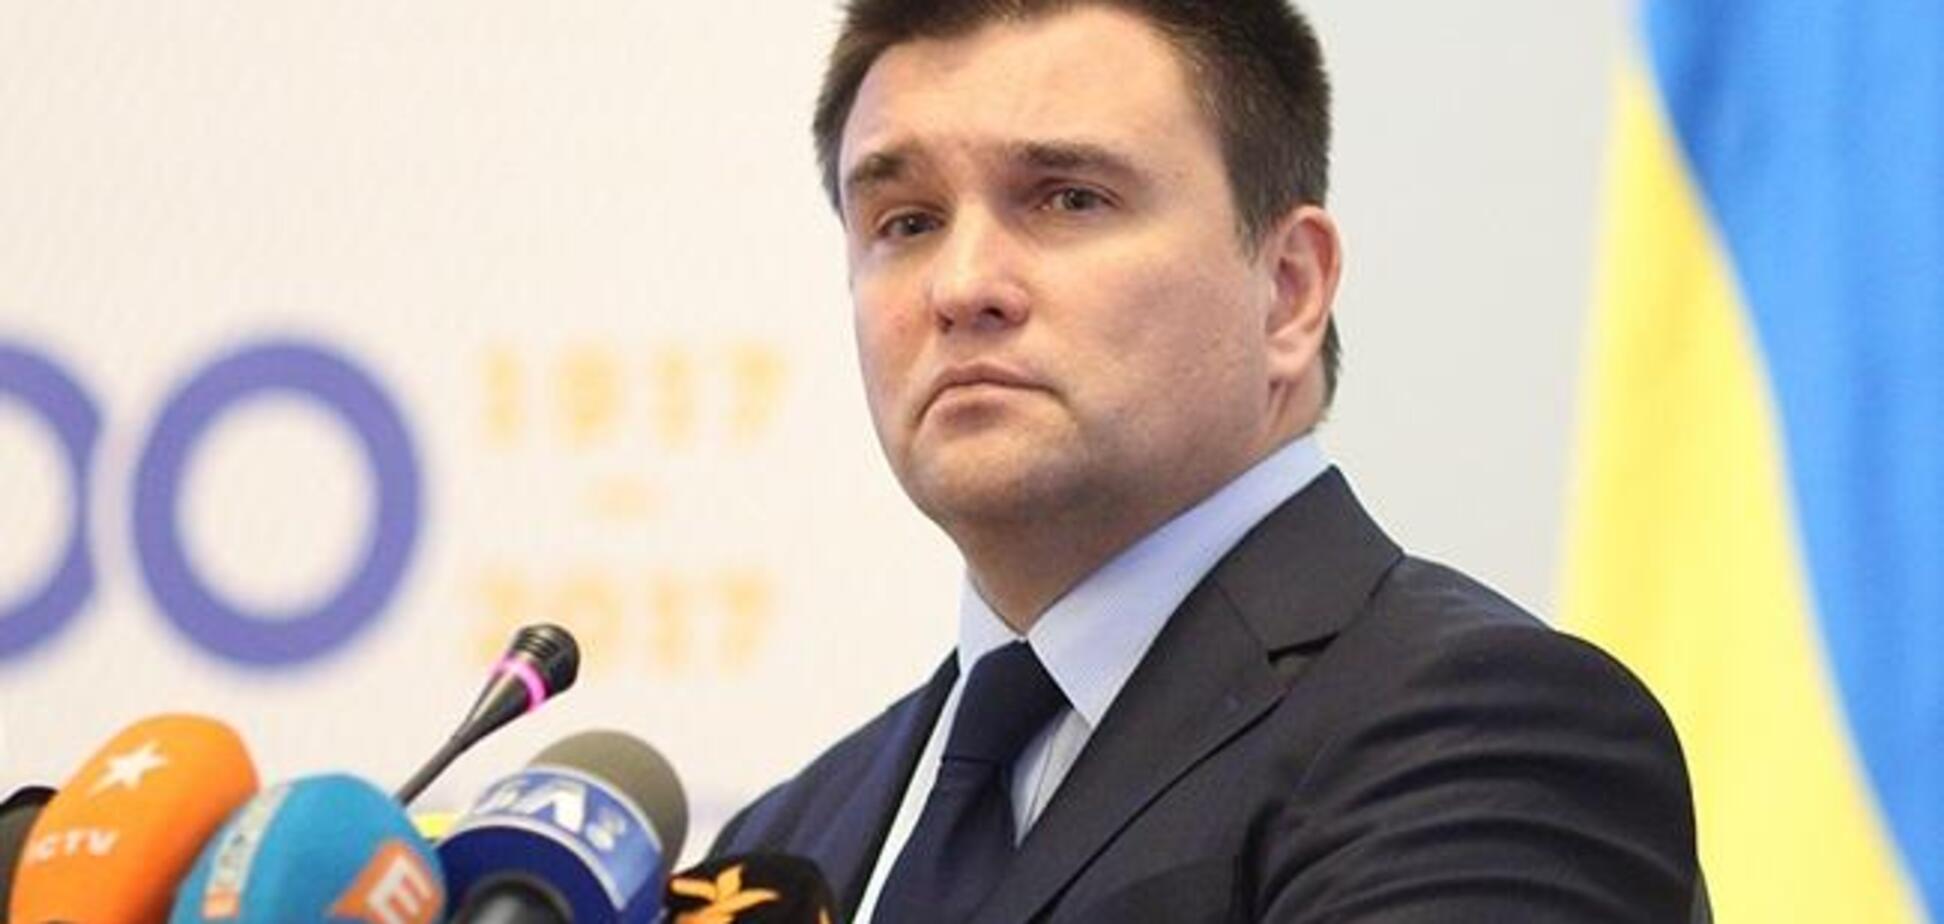 МИД Украины предложил выйти из СНГ и разорвать дружбу с Россией